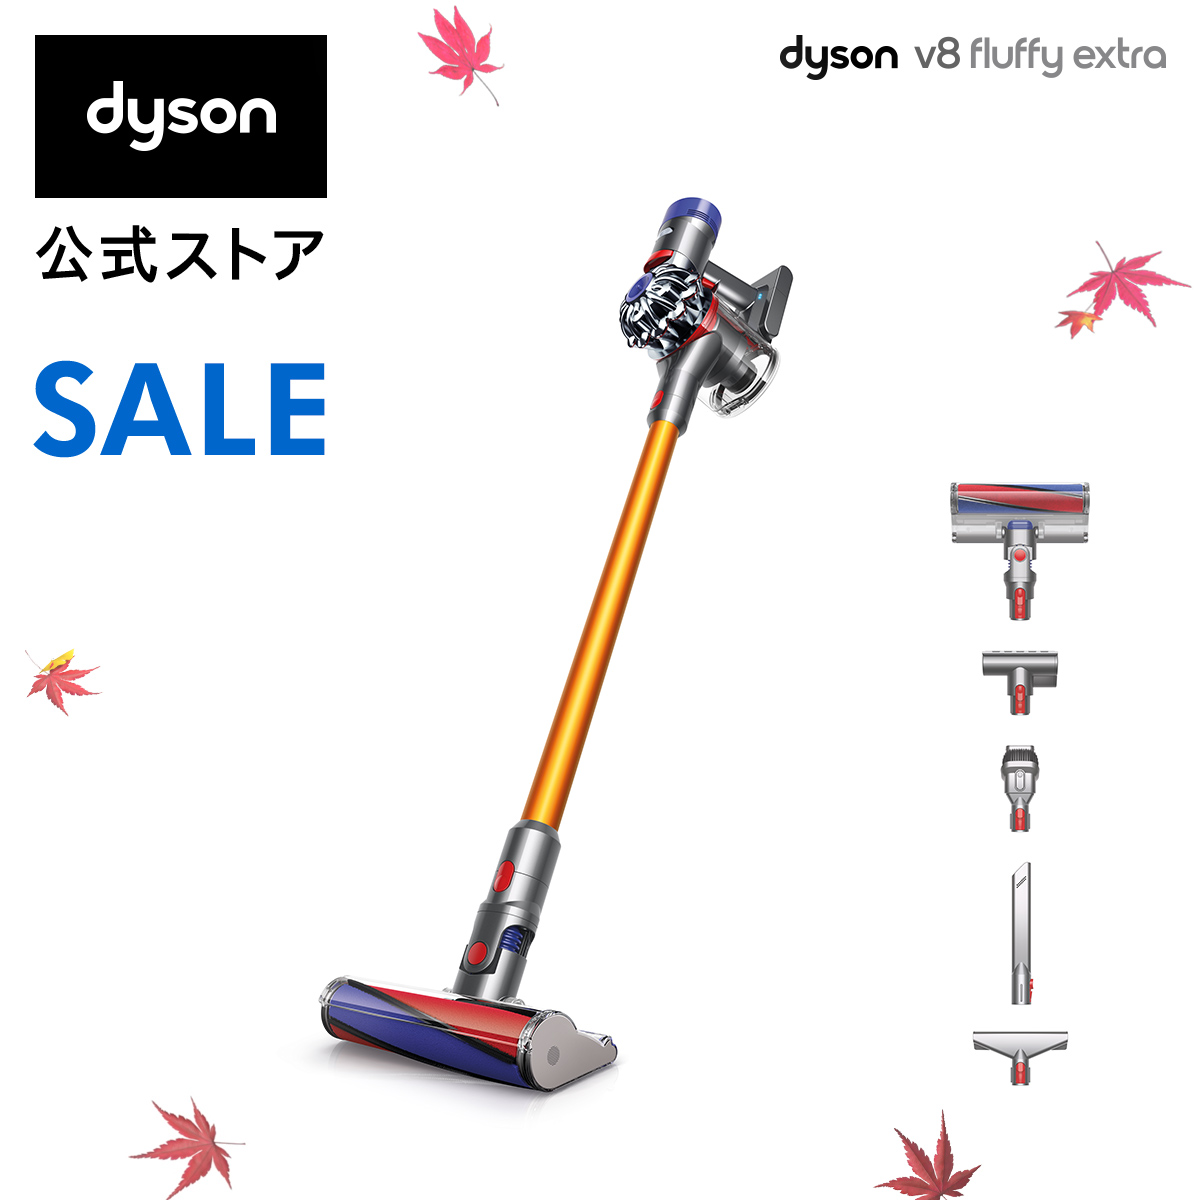 【期間限定価格】Dyson V8 Fluffy Extra サイクロン式 コードレス掃除機 dyson SV10FF EXT